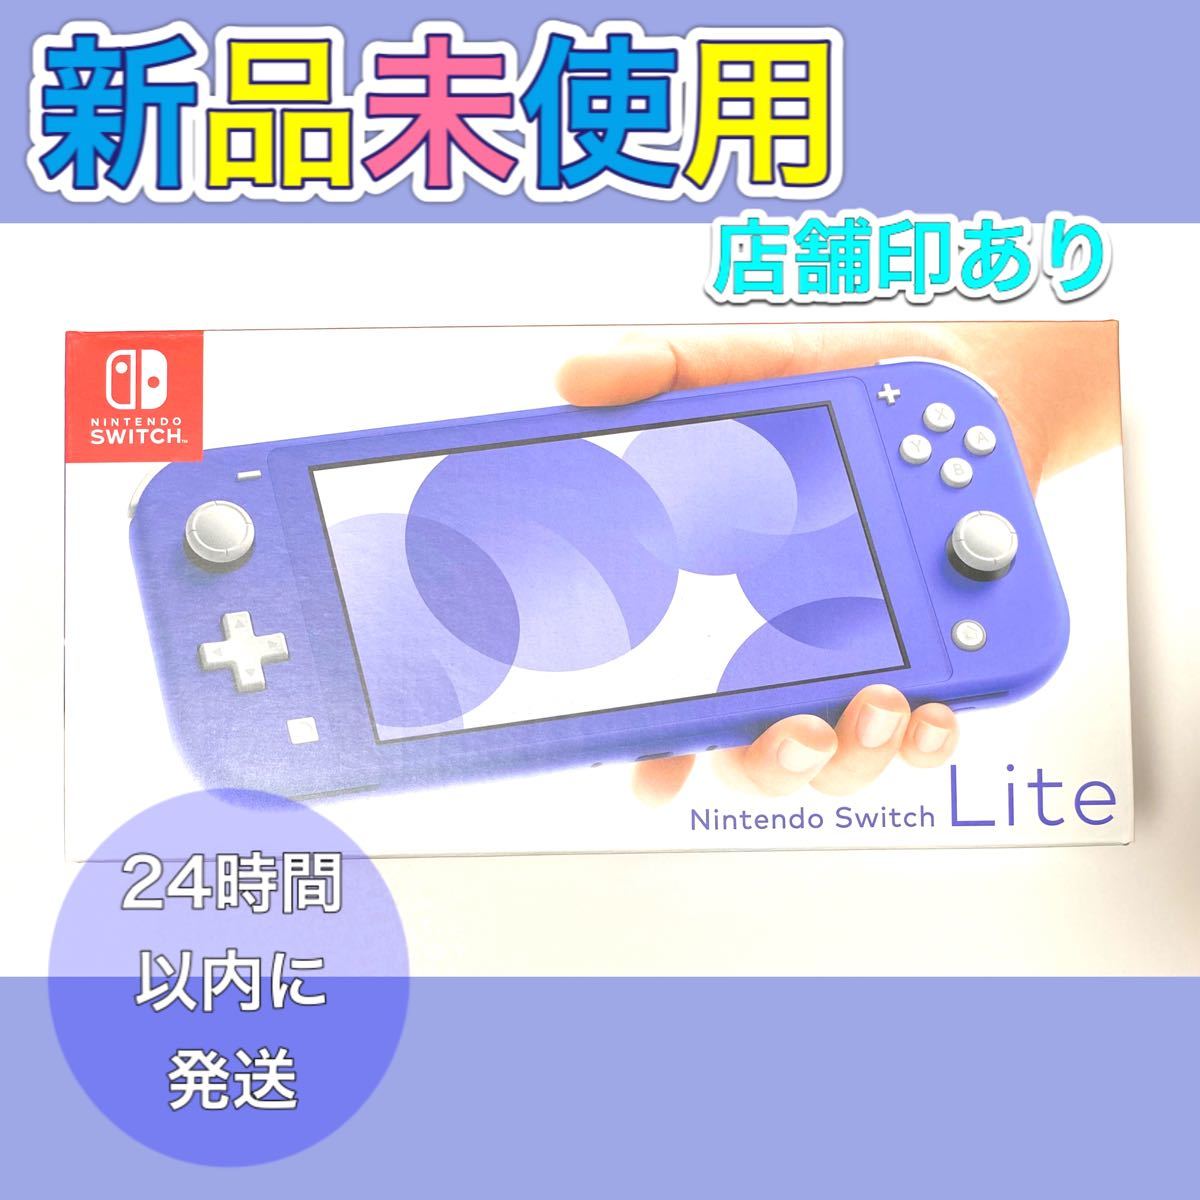 Nintendo Switch lite Blue ニンテンドースイッチライト ブルー 本体